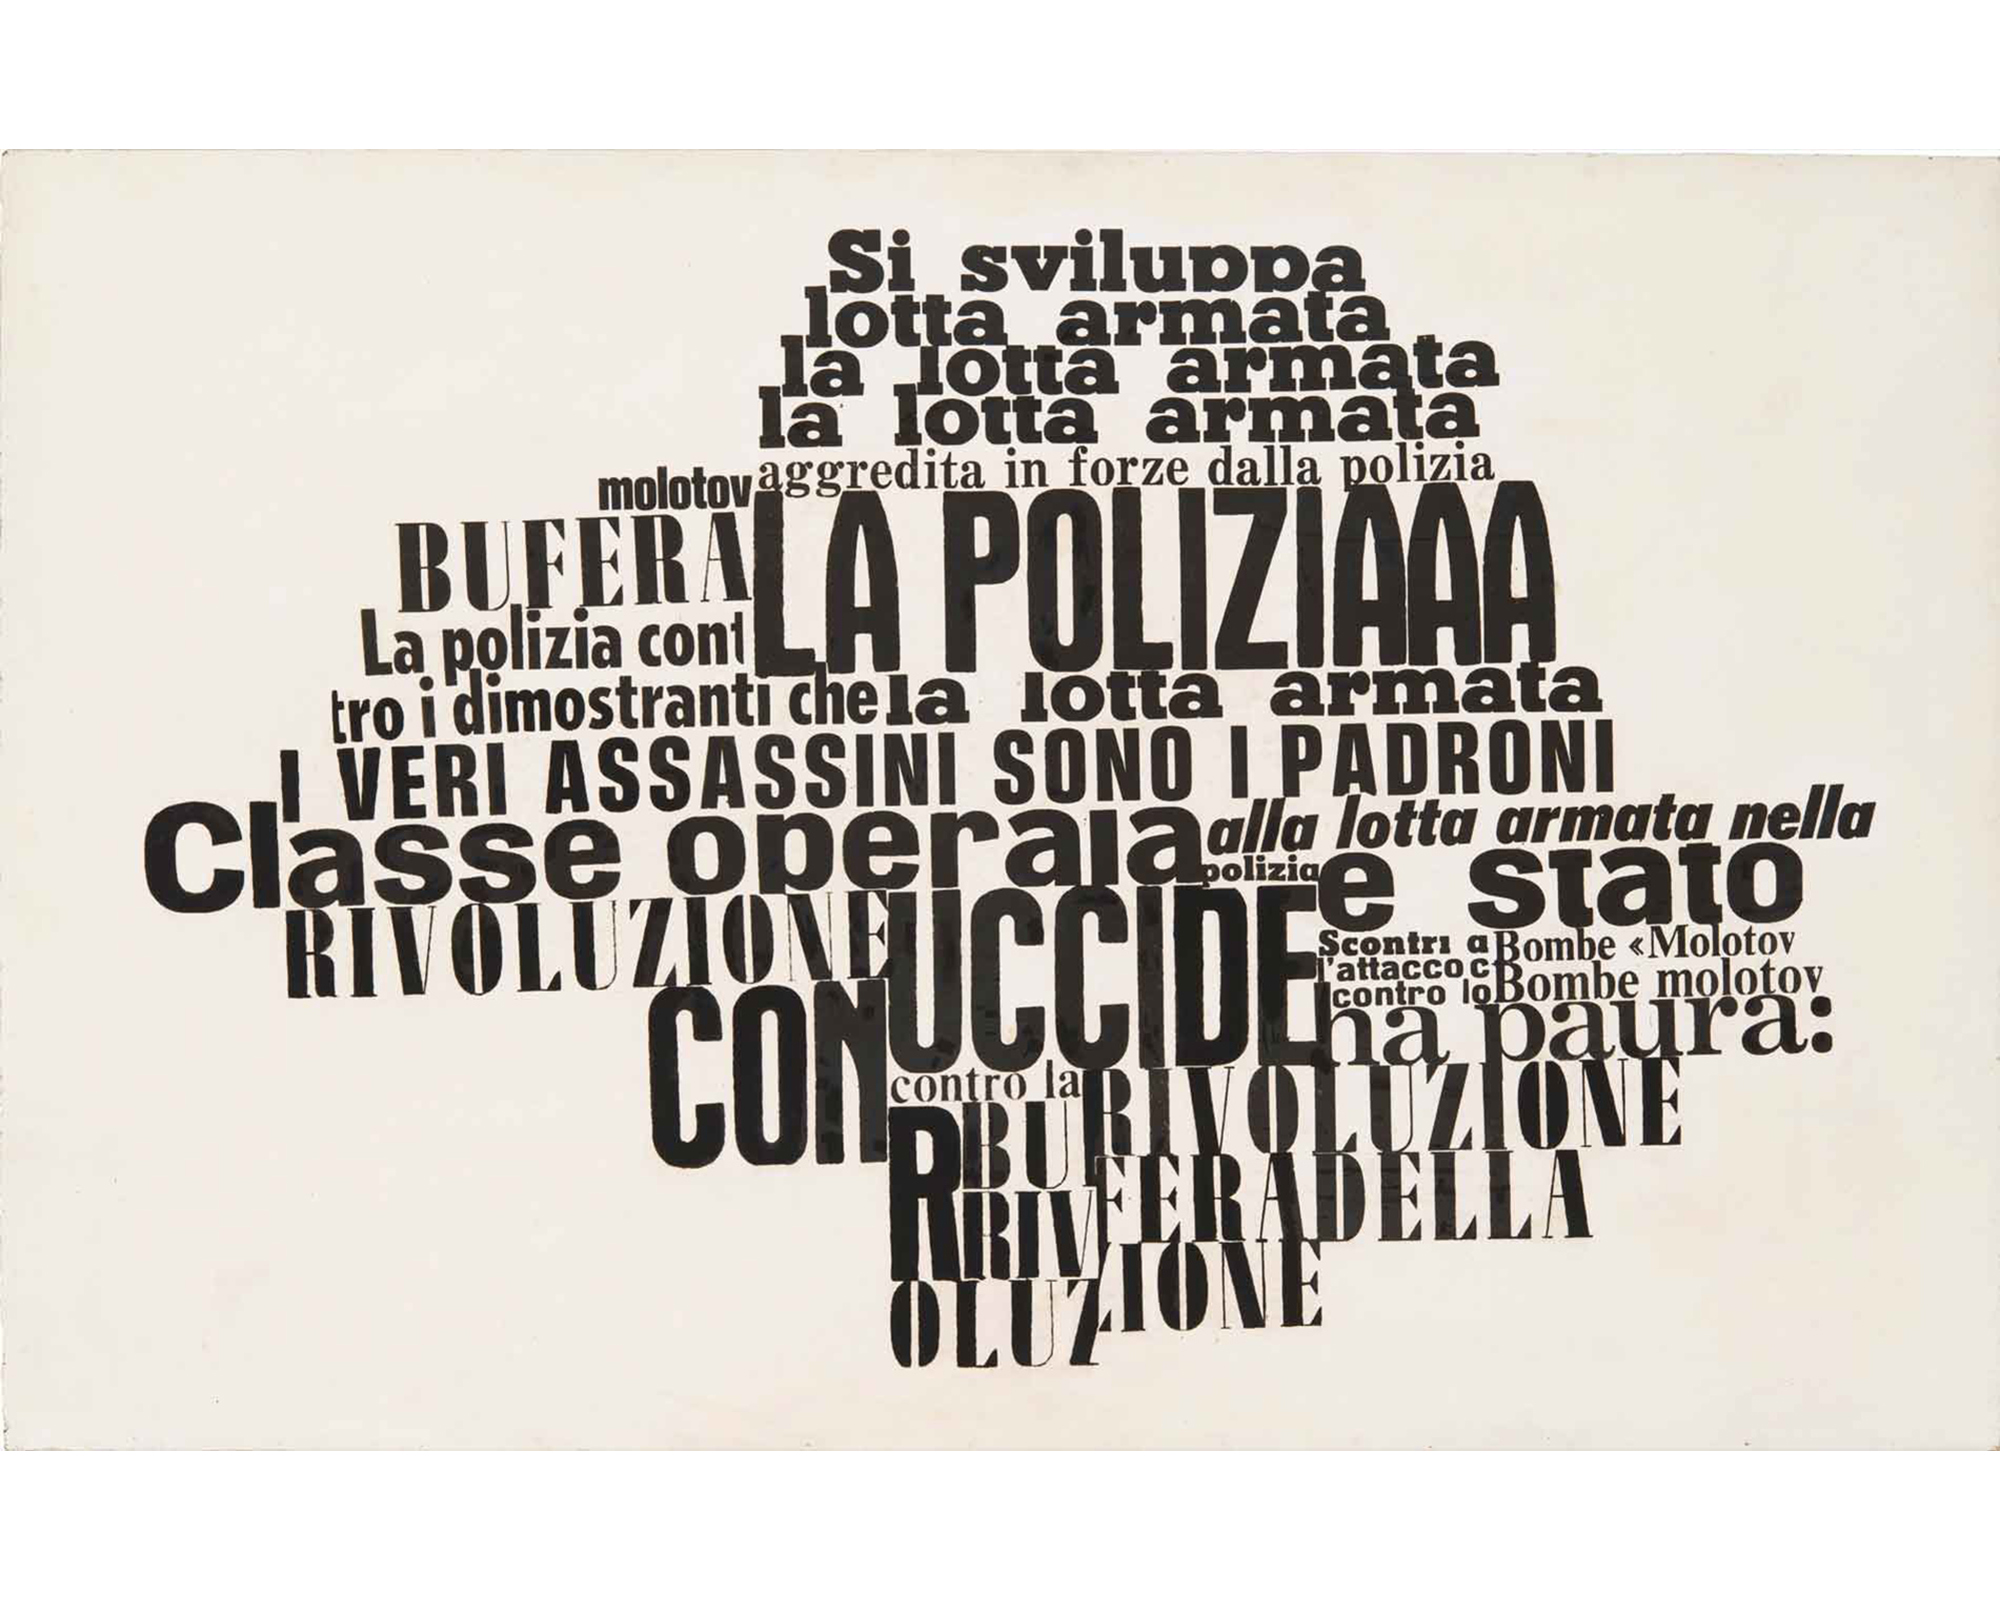 Nanni Balestrini in the exhibition "La violència illustrada" at La Virreina in Barcelona.

Nanni Balestrini, La Polizia, 1972